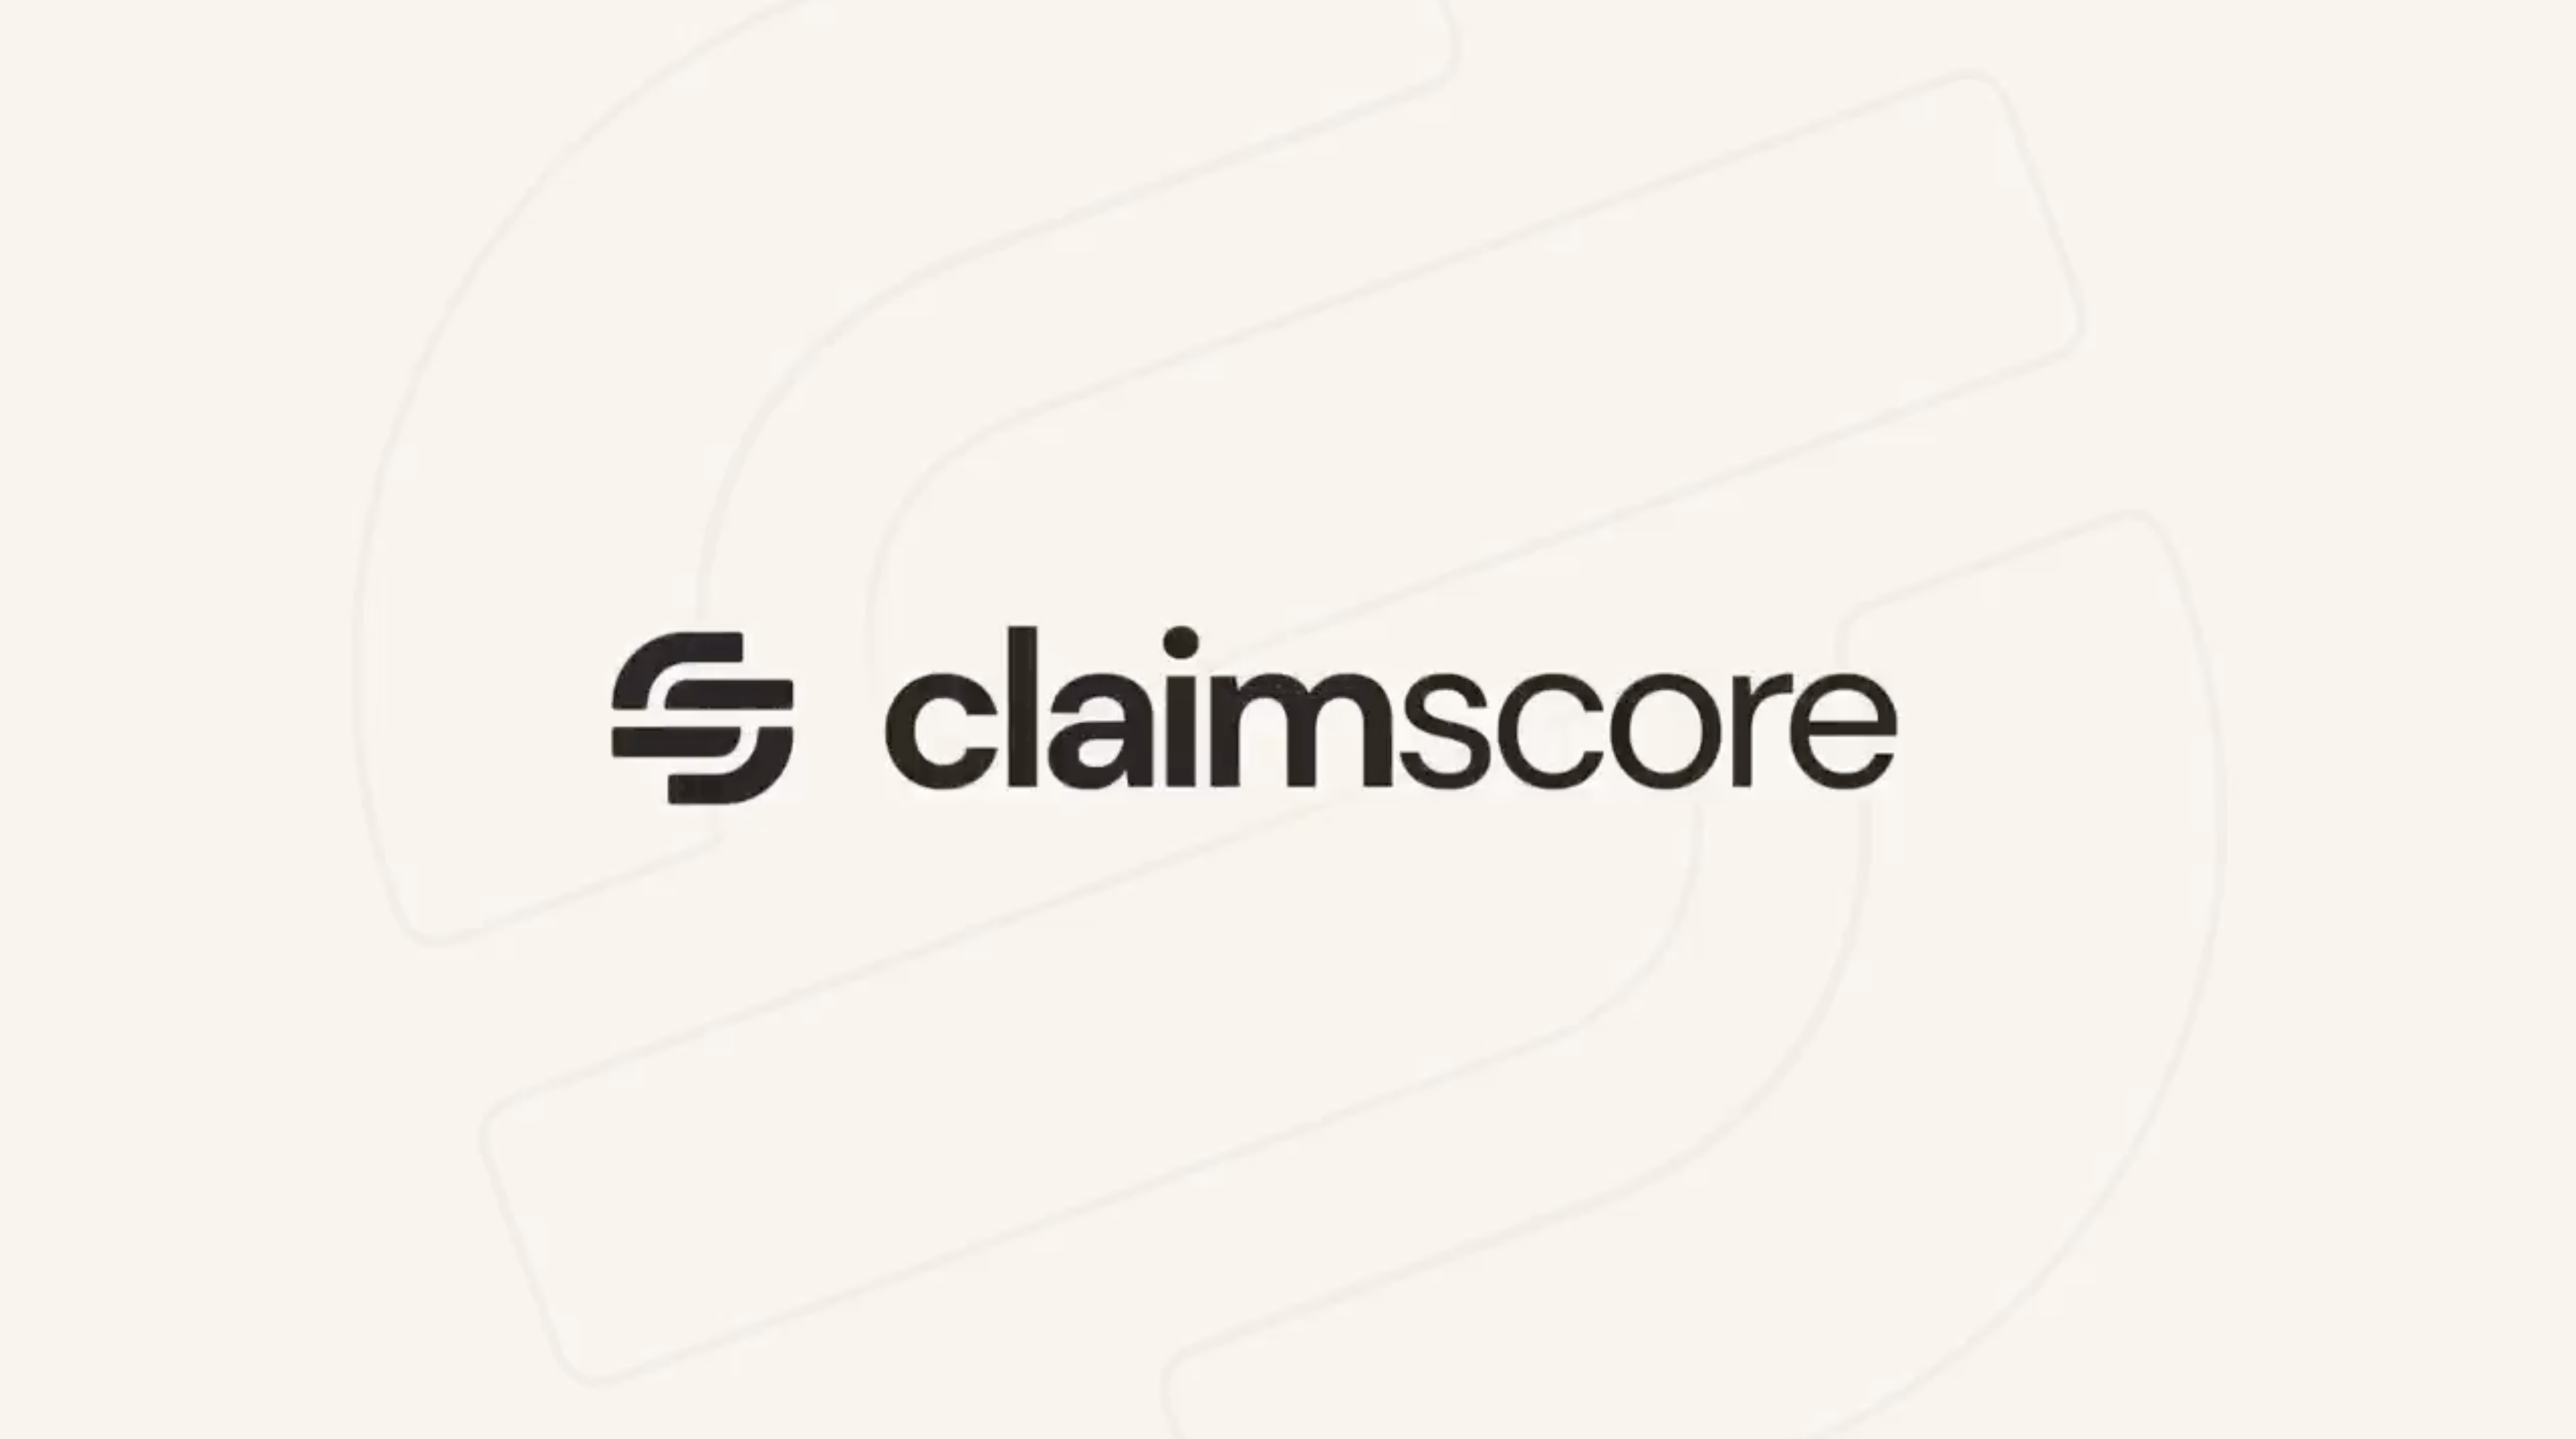 Claimscore